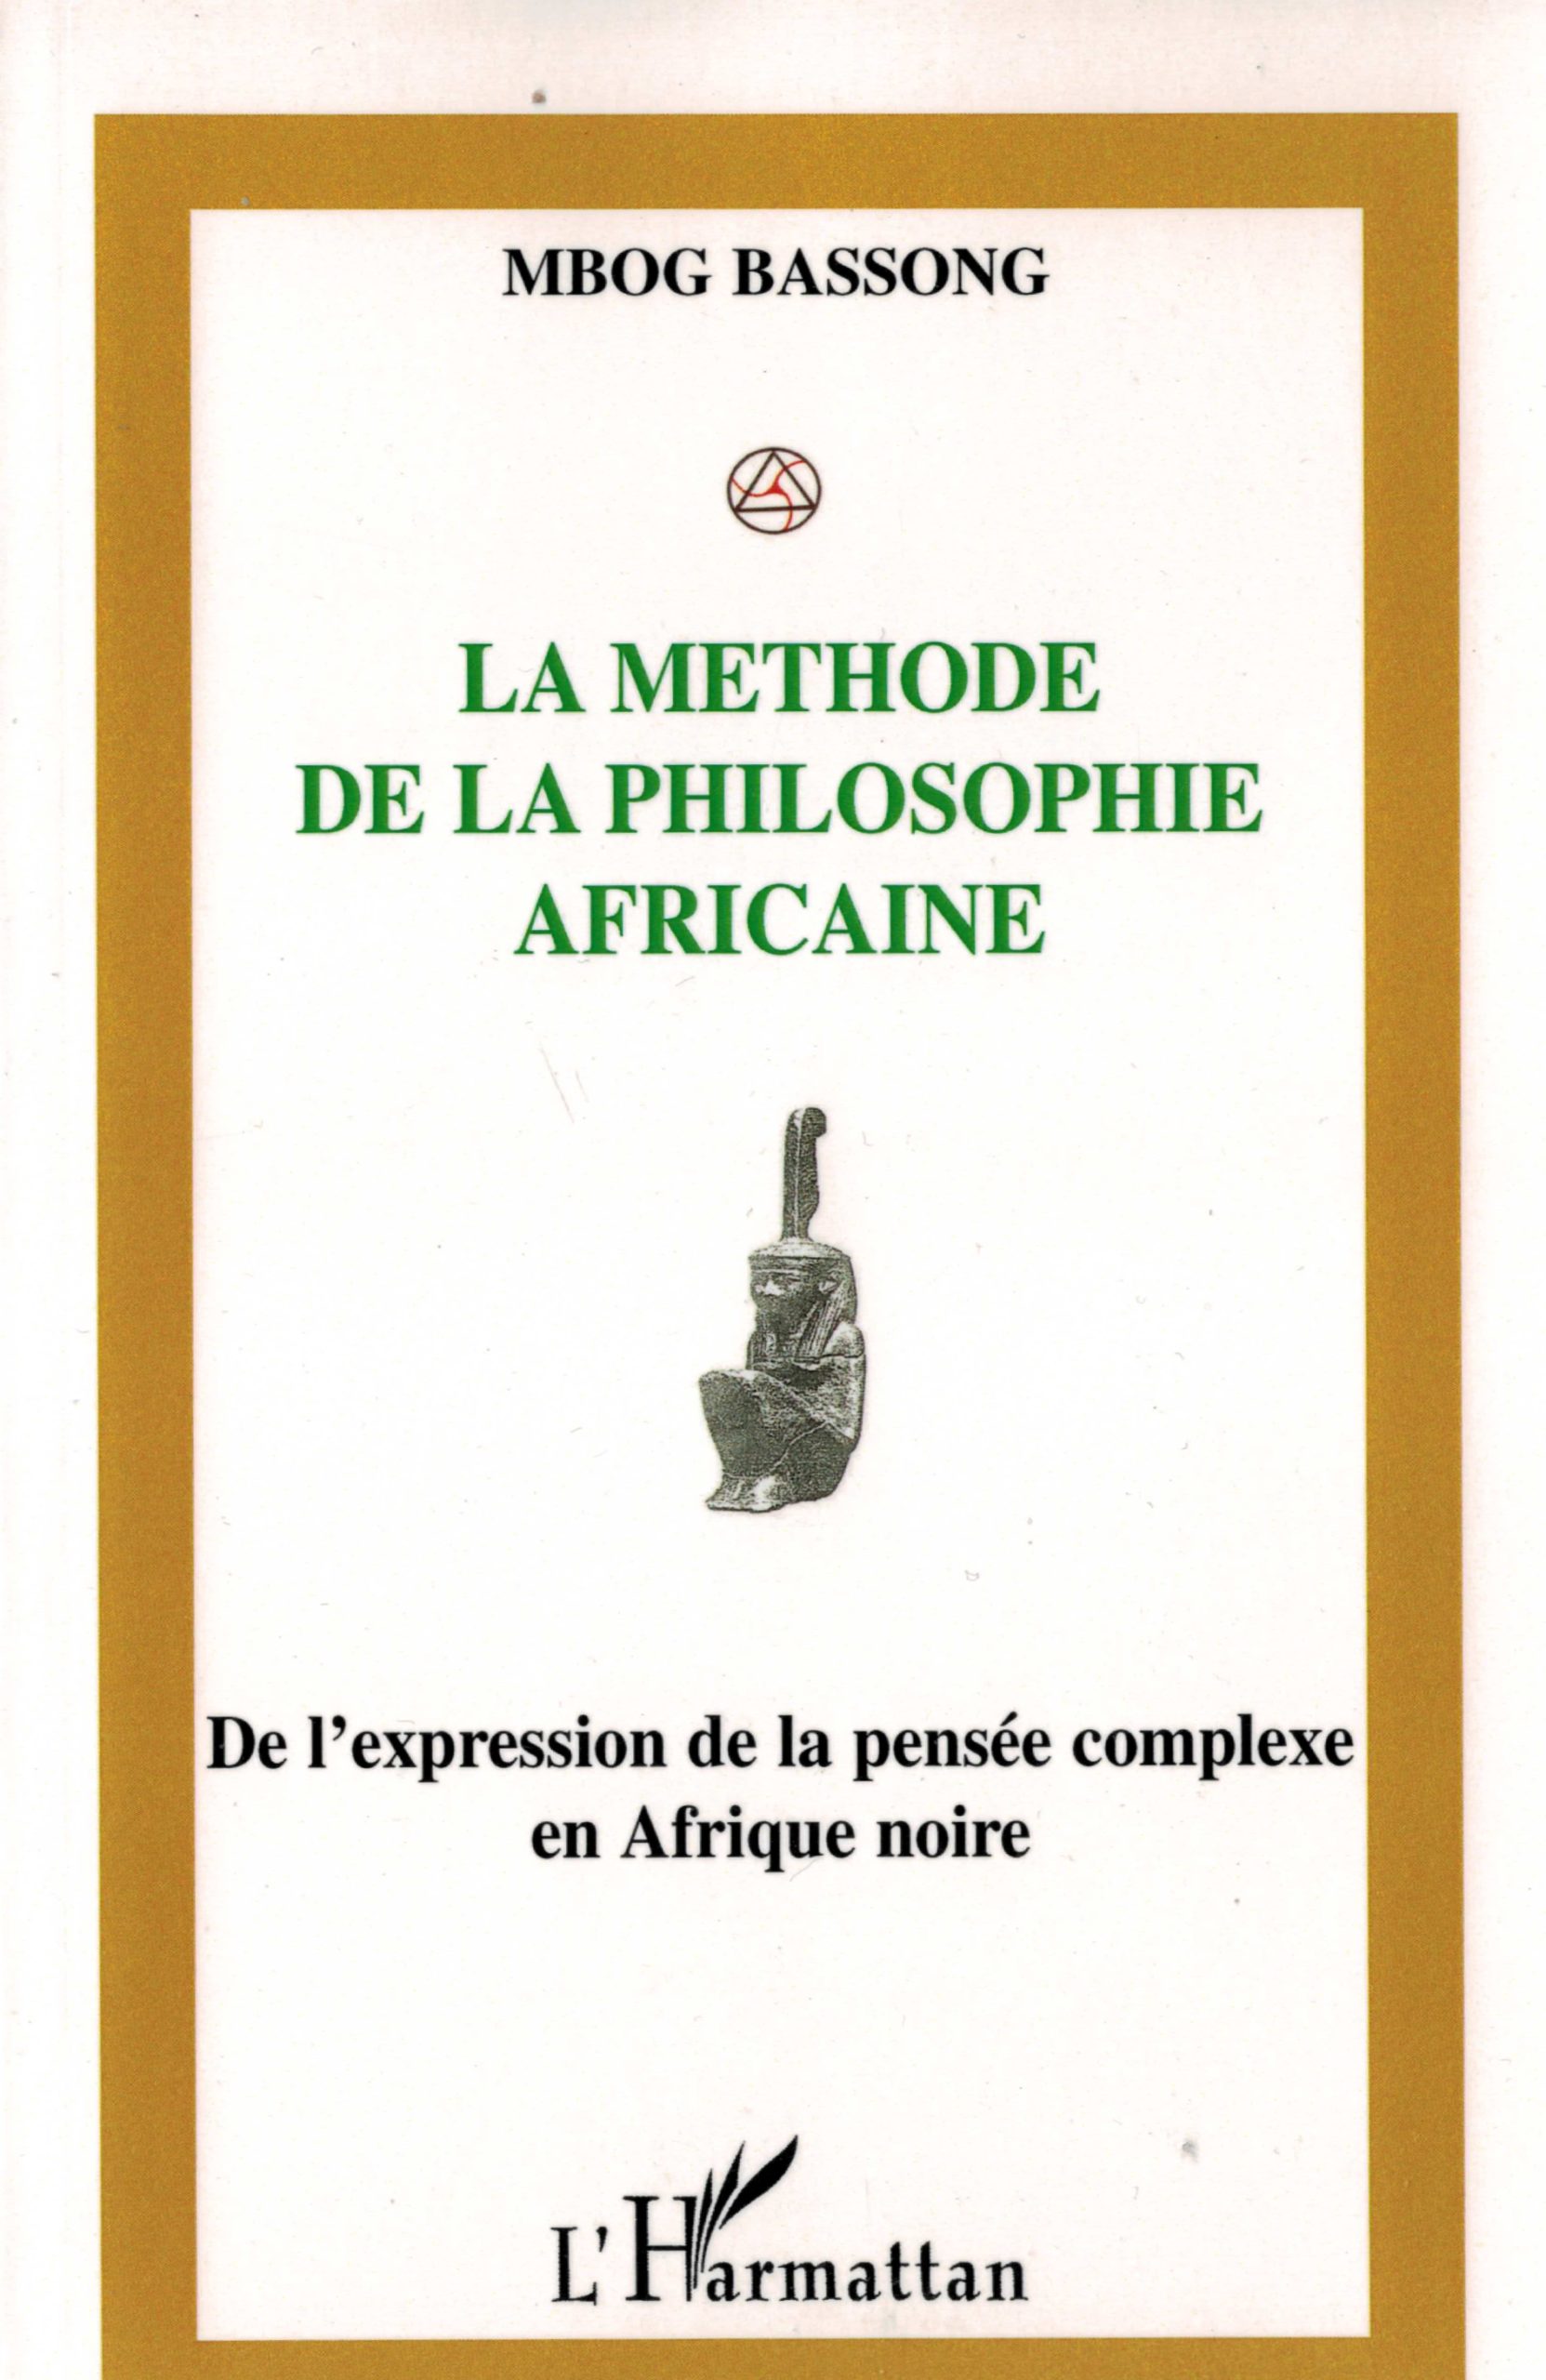 dissertation sur la philosophie africaine pdf